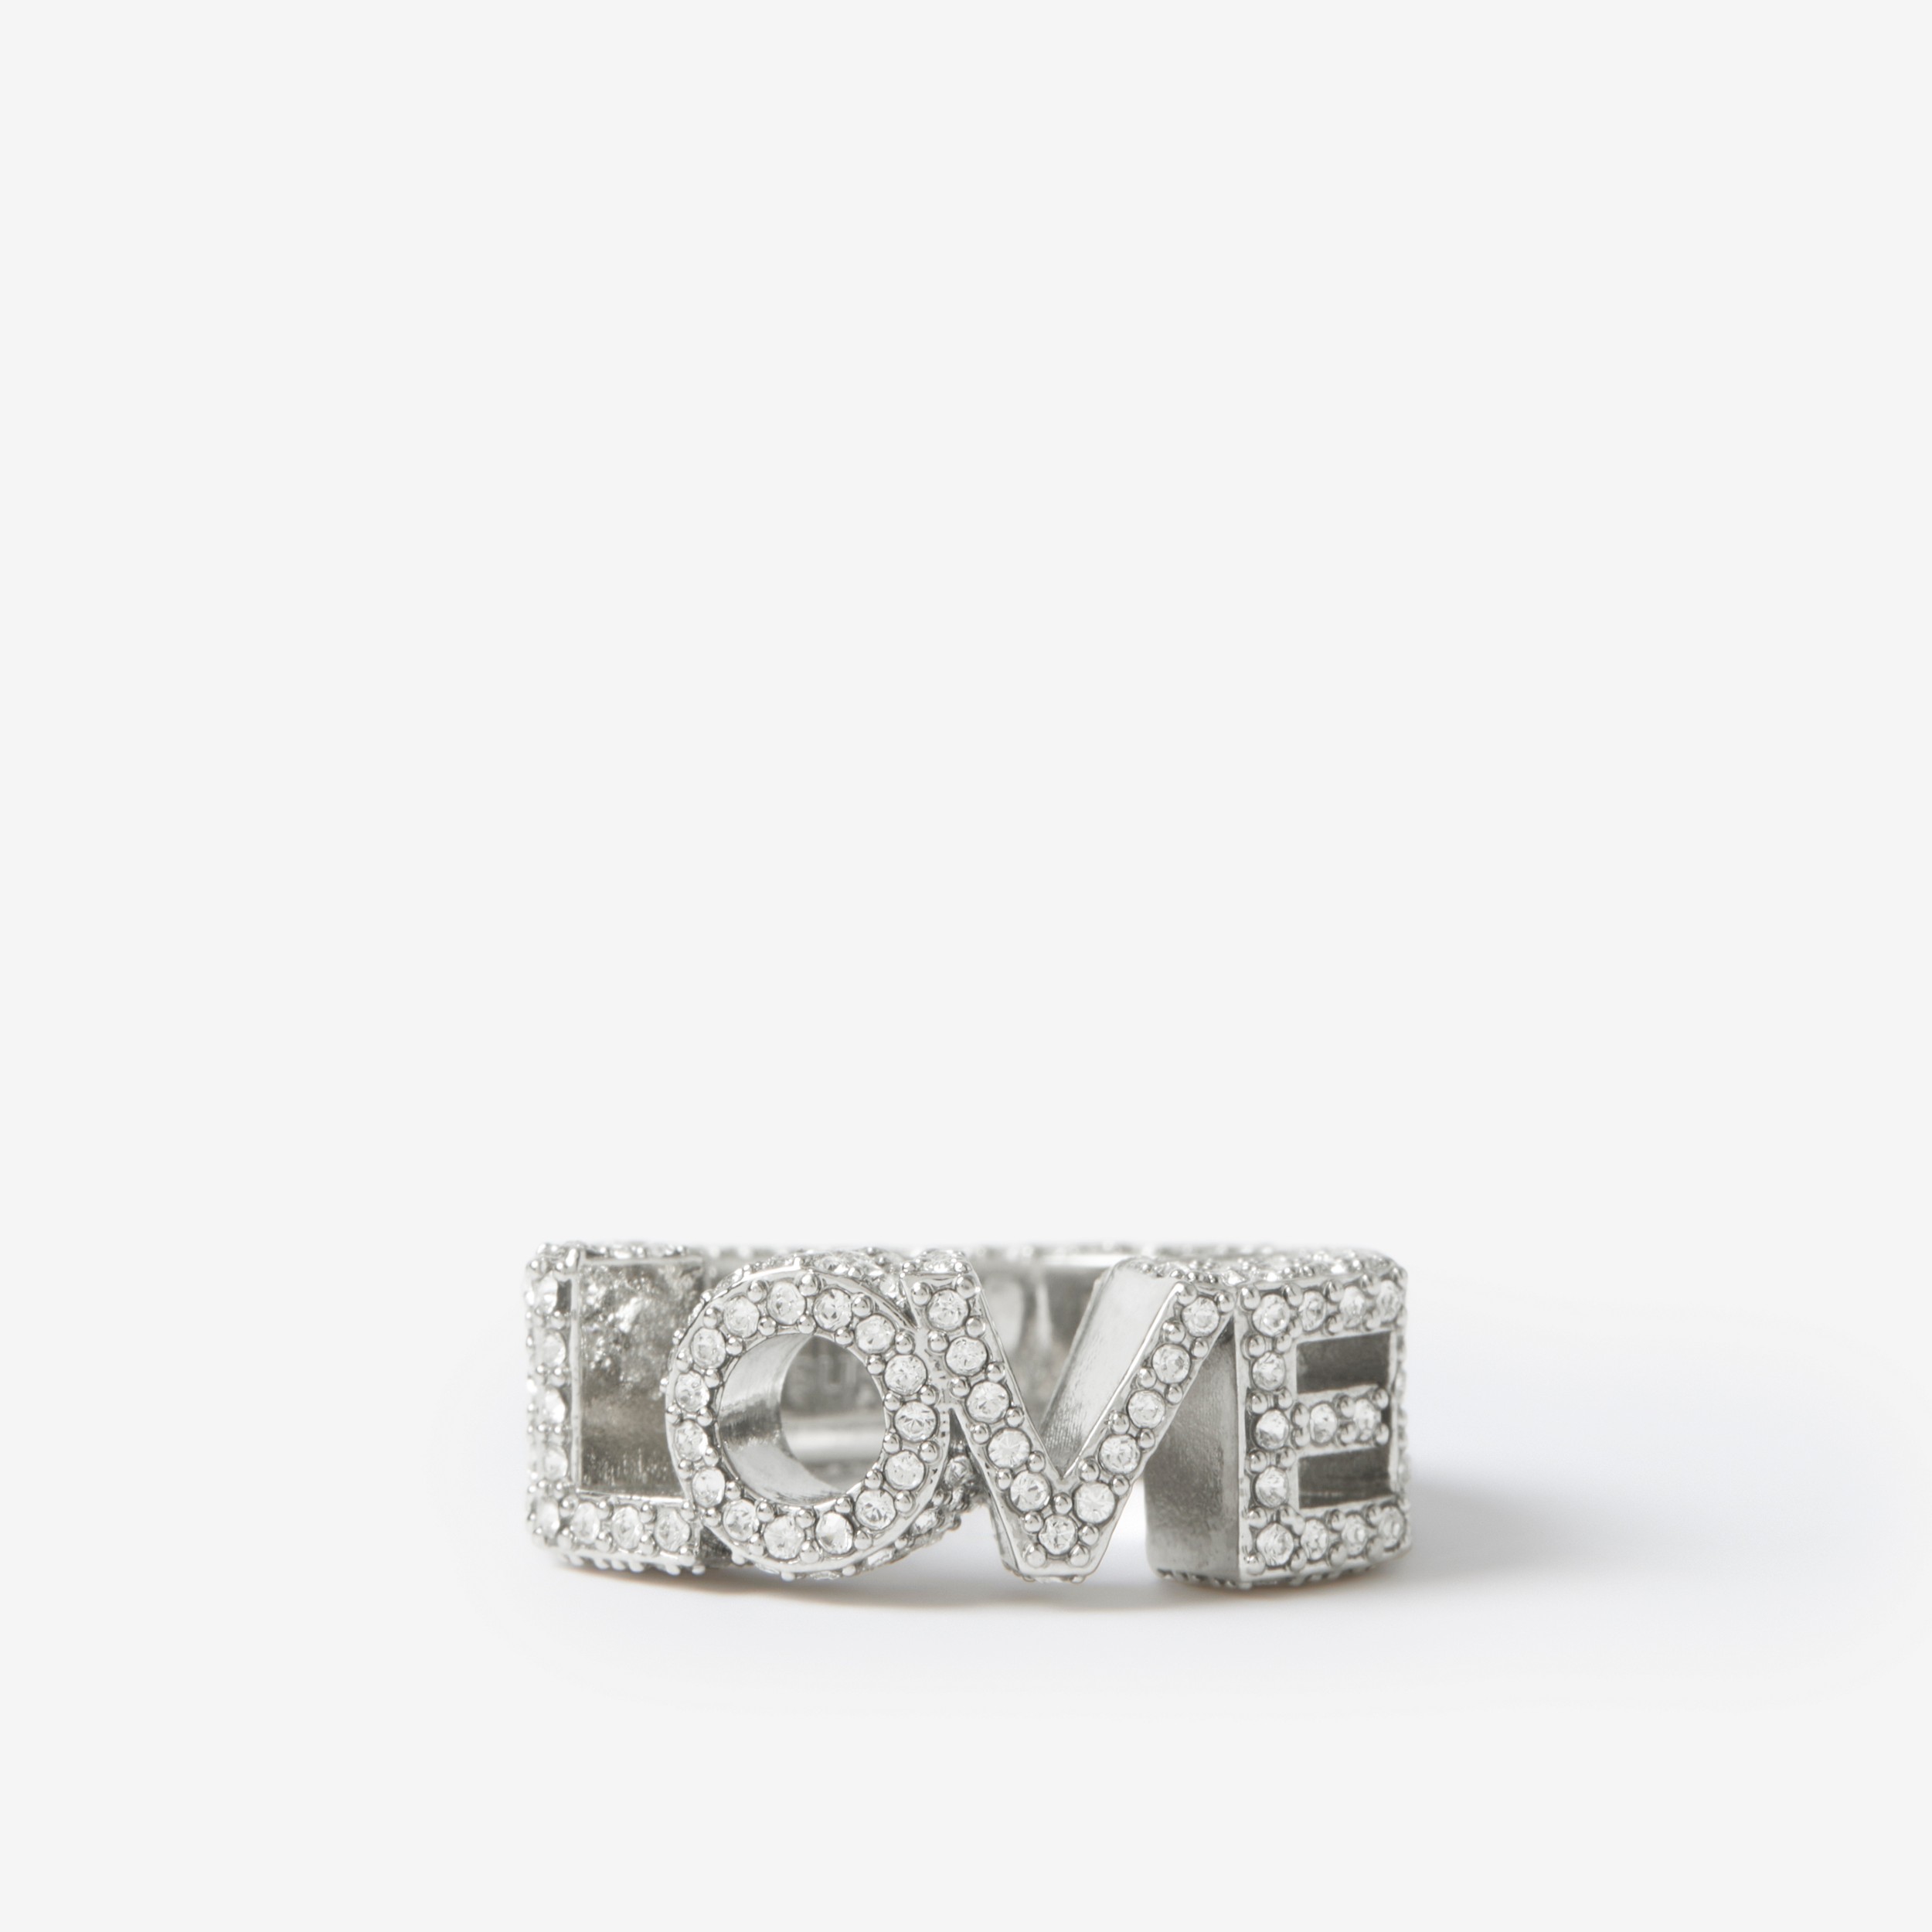 Bague Love plaquée palladium en cristaux (Palladium/cristal) - Femme | Site officiel Burberry® - 1